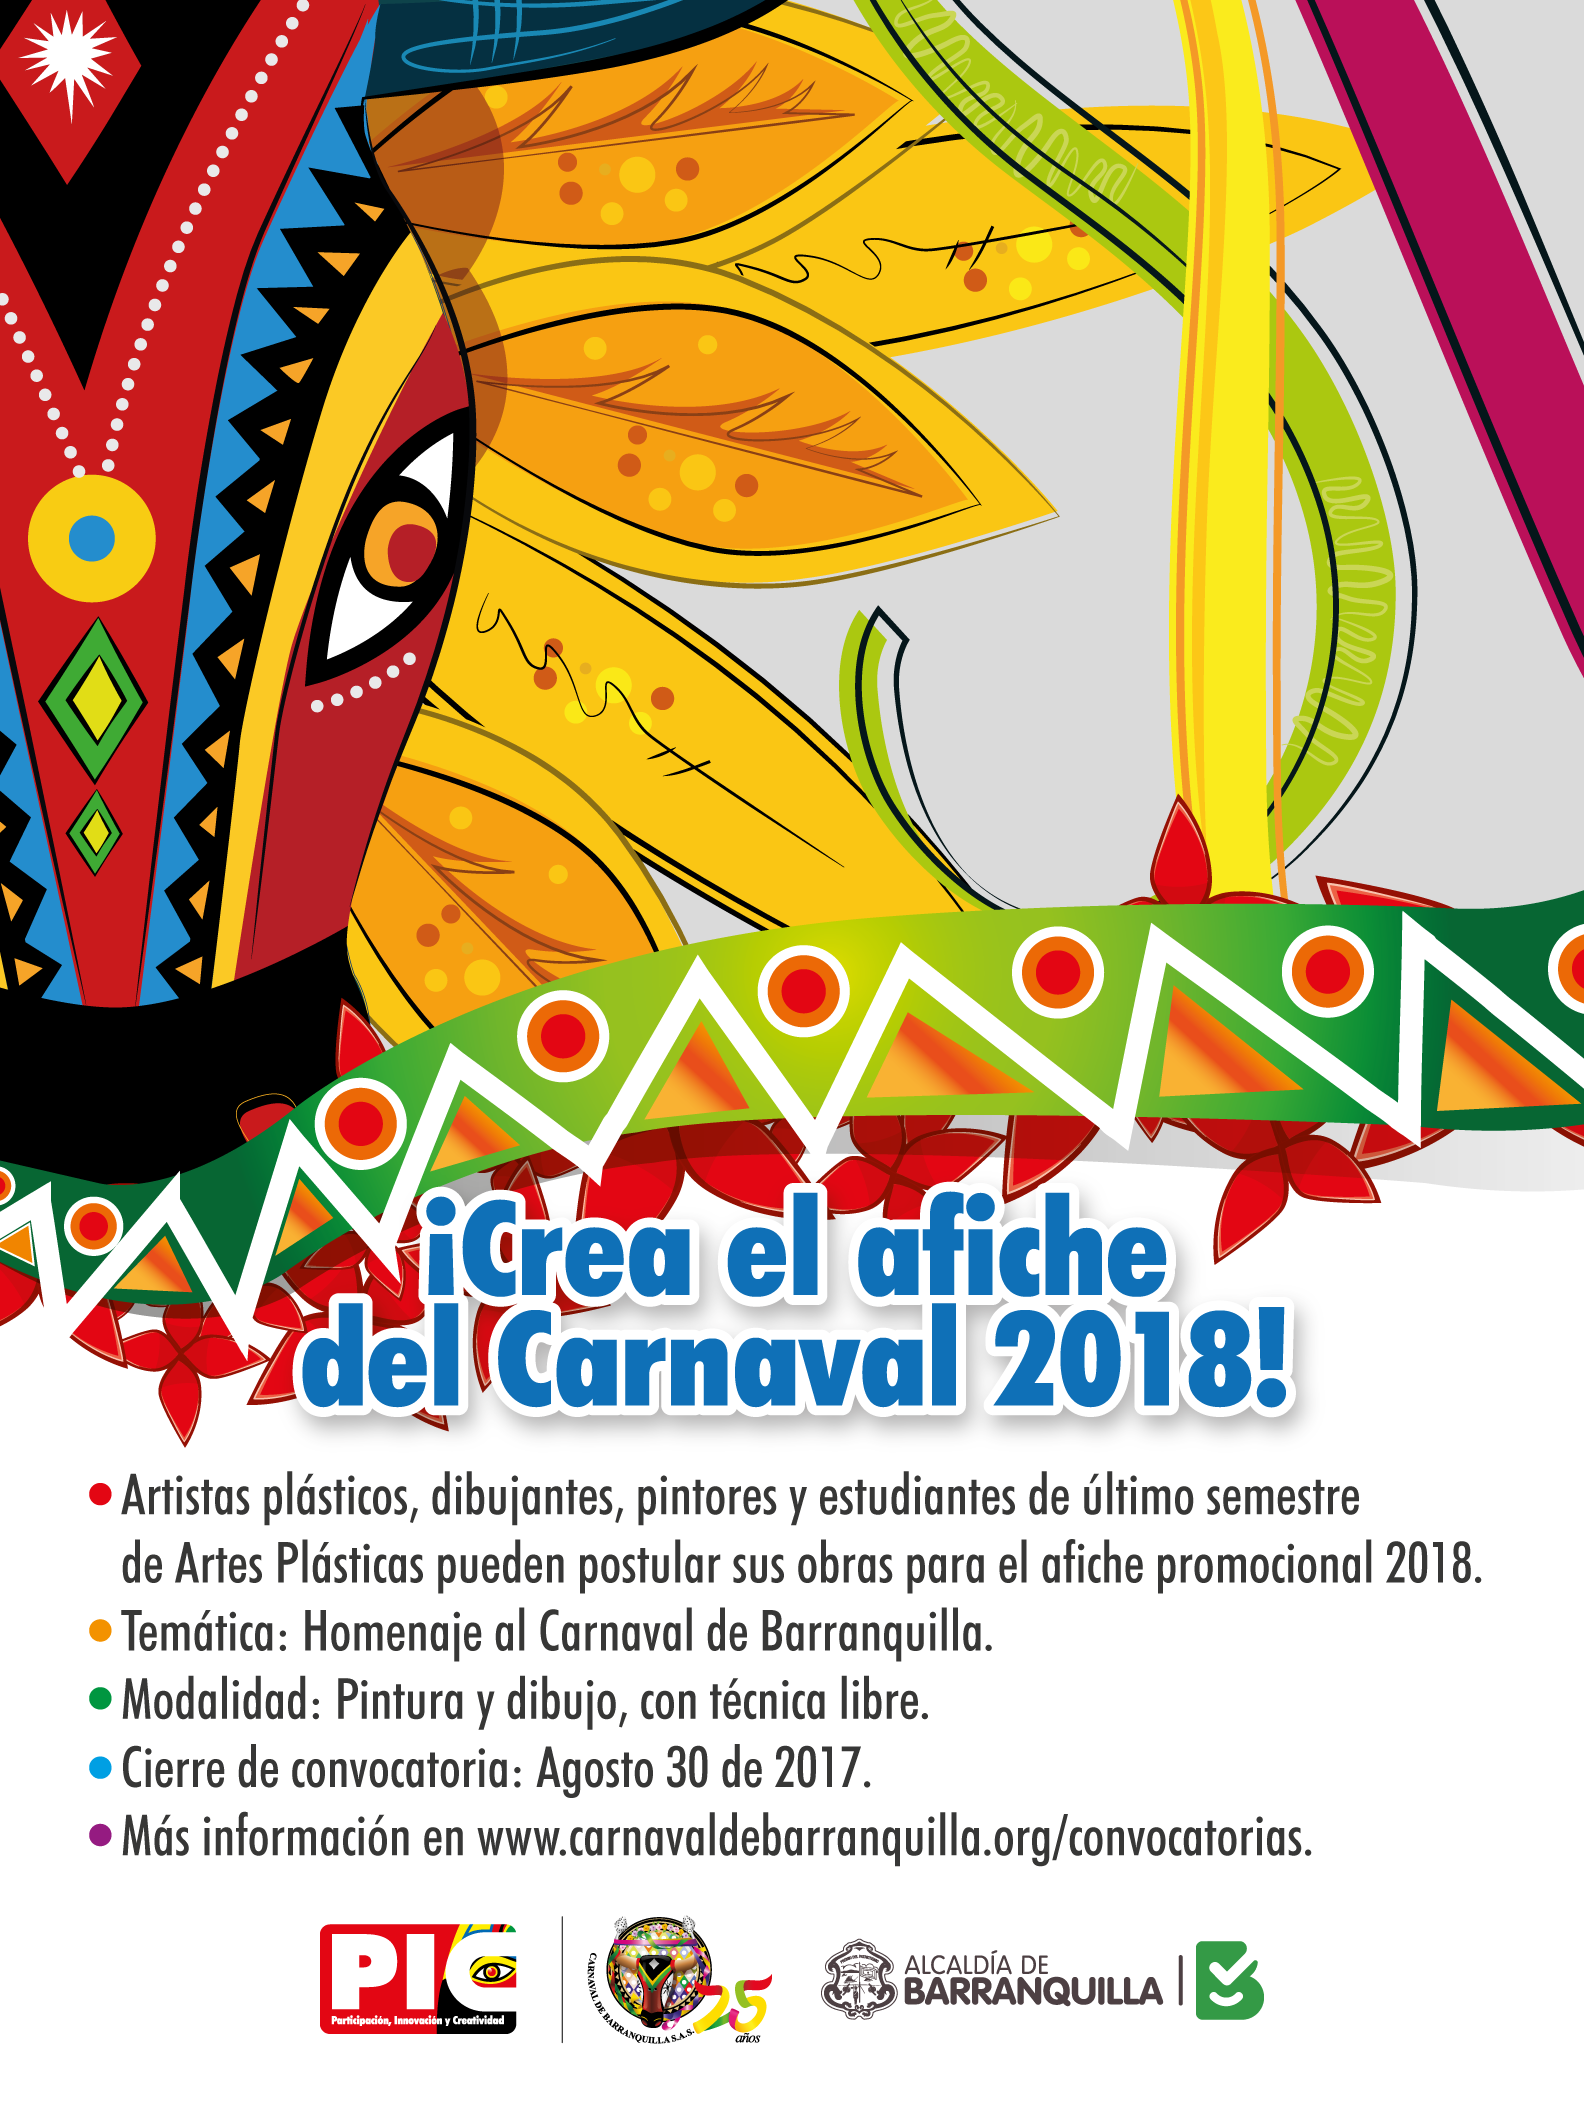 Abierta convocatoria para diseño de afiche y carrozas del Carnaval 2018